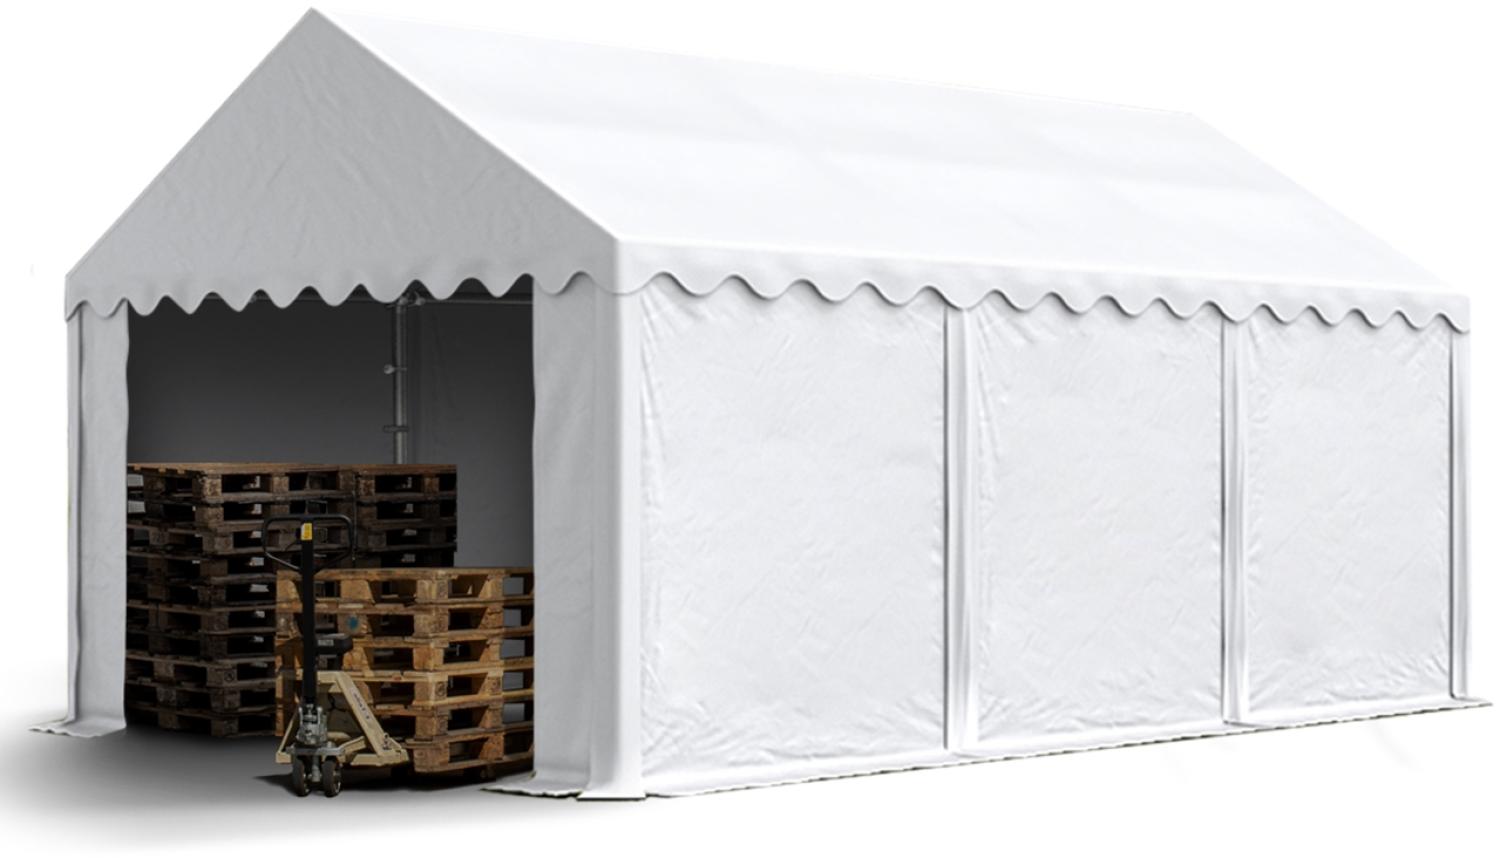 Stabiles Lagerzelt 4x6 m Unterstand mit Bodenrahmen und Dachverstärkung PVC Plane 800 N weiß 100% wasserdicht Zelthalle Weidezelt Bild 1